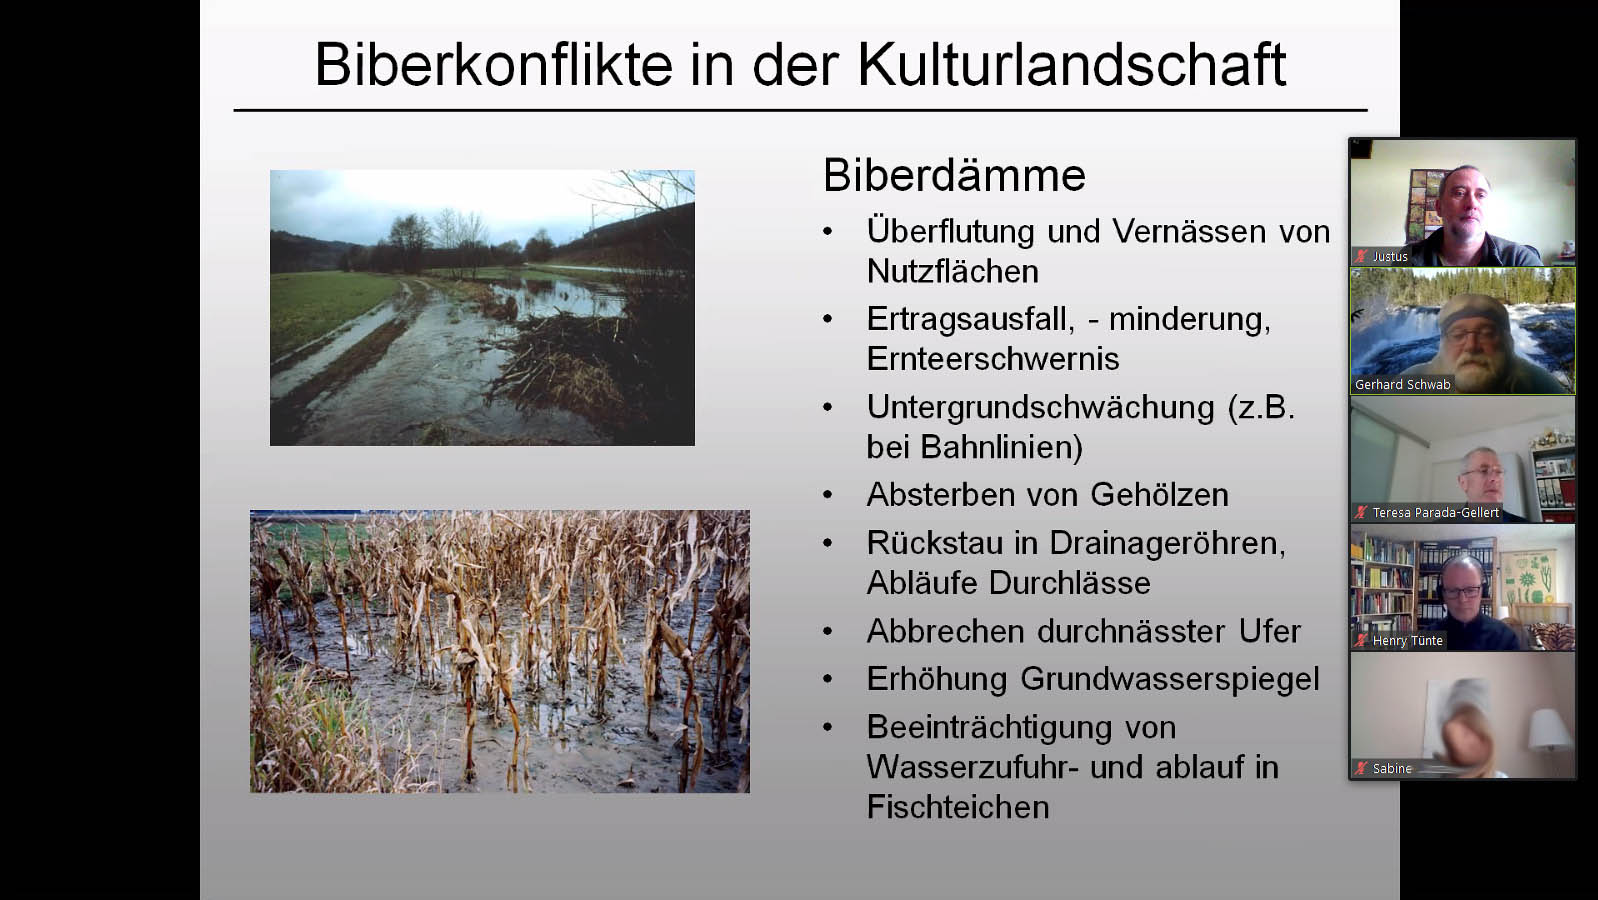 Vortrag von Gerhard Schwab, Biber-Manager Bayern: Konflikte und Lösungen , Bibermanagement in Bayern